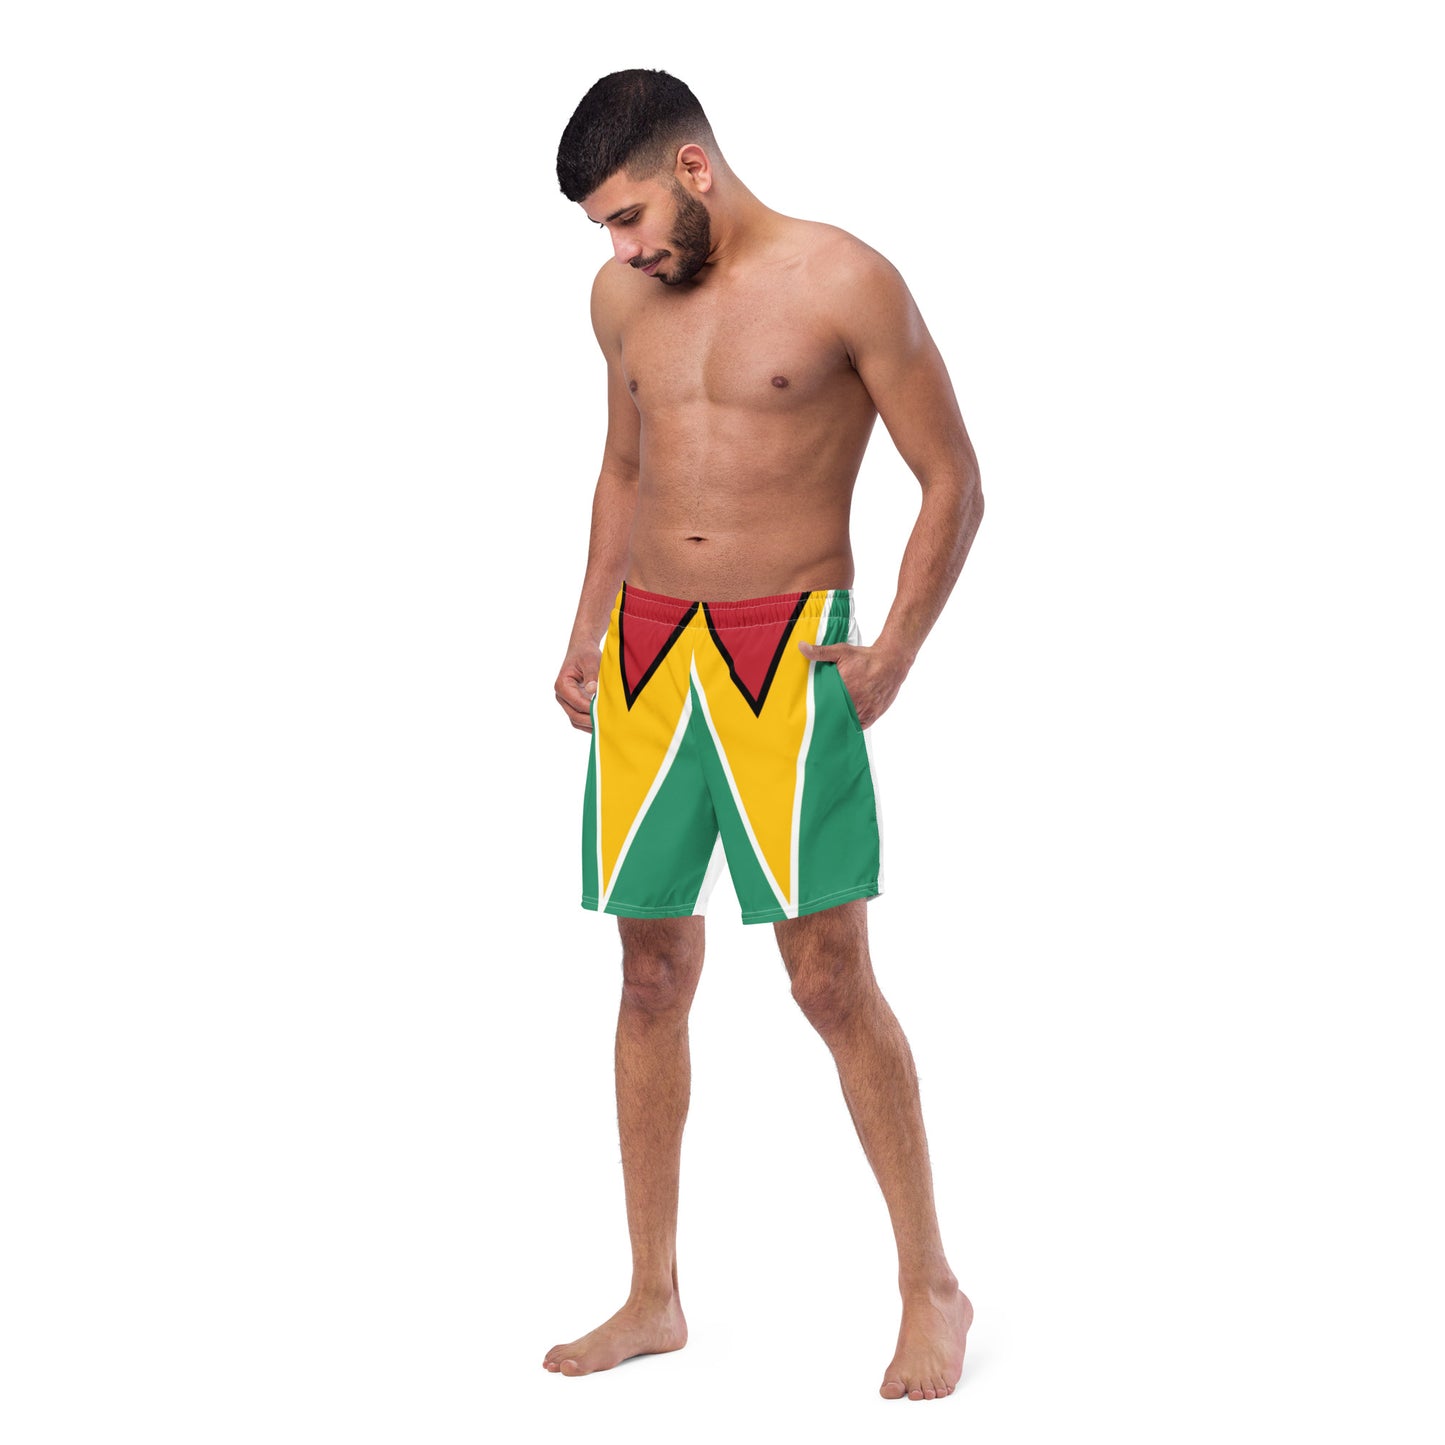 Guyana Mens Swim Trunks by Bahaswim™